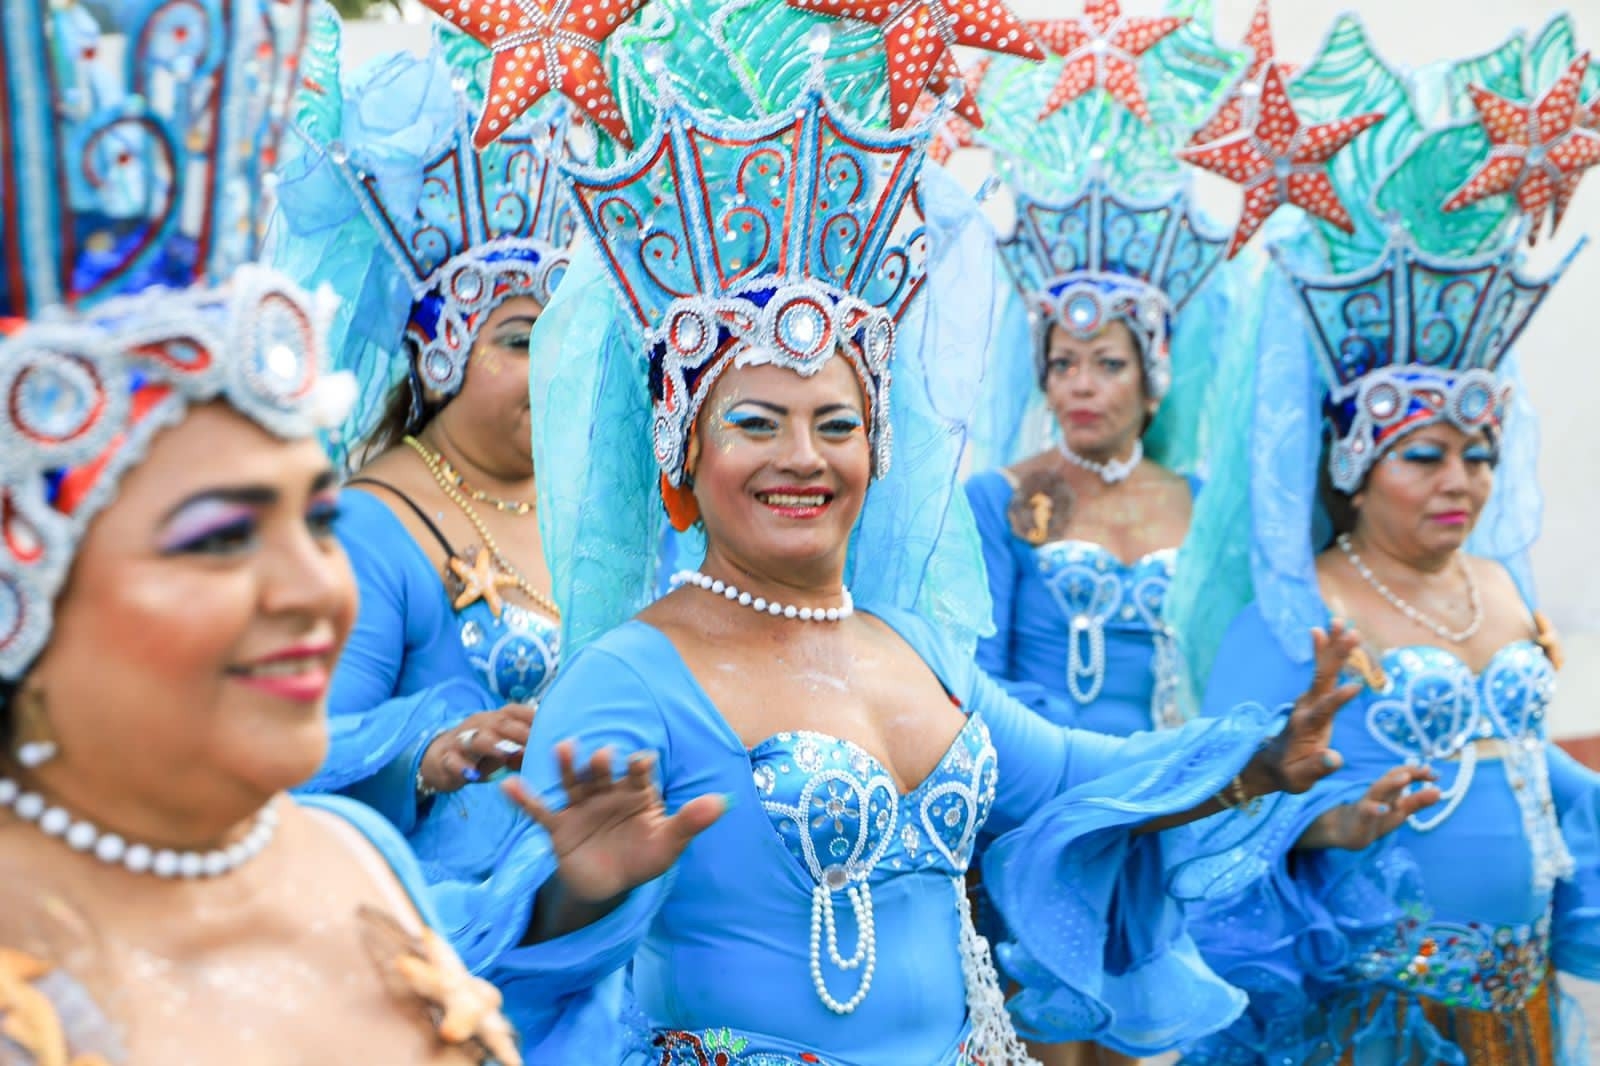 La fiesta en Isla Mujeres con el Carnaval avivó la fiesta en los últimos días